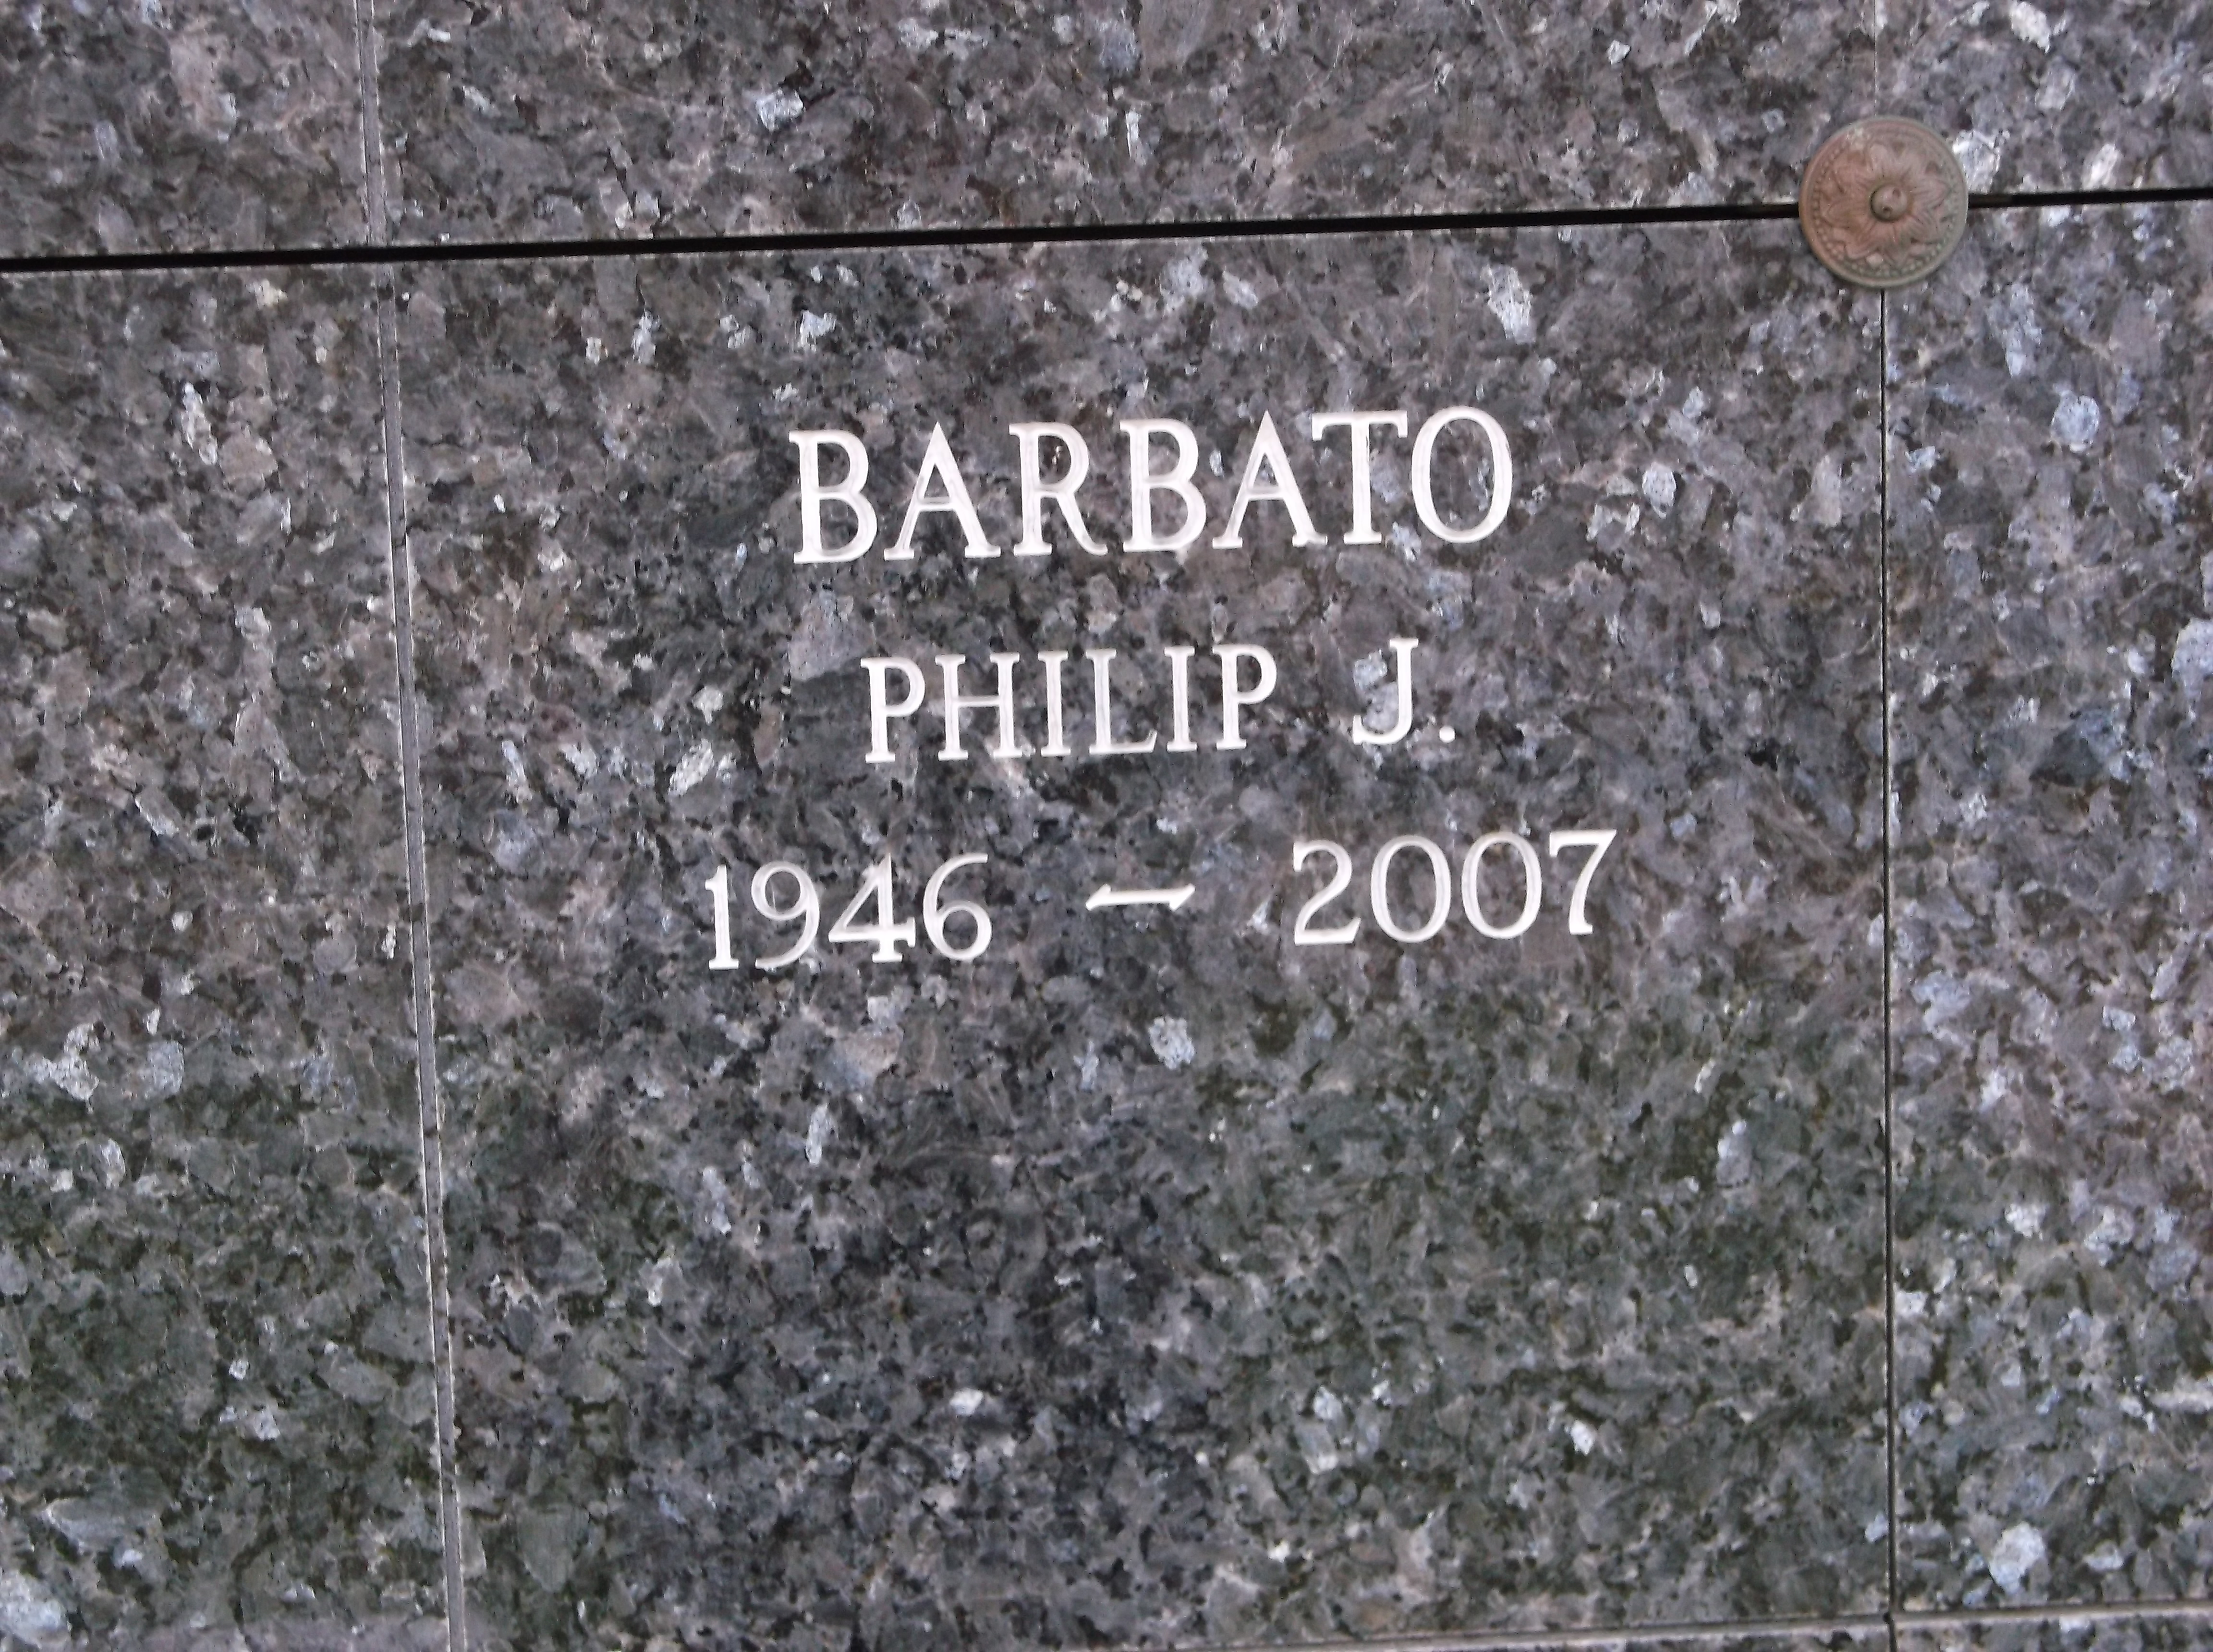 Philip J Barbato